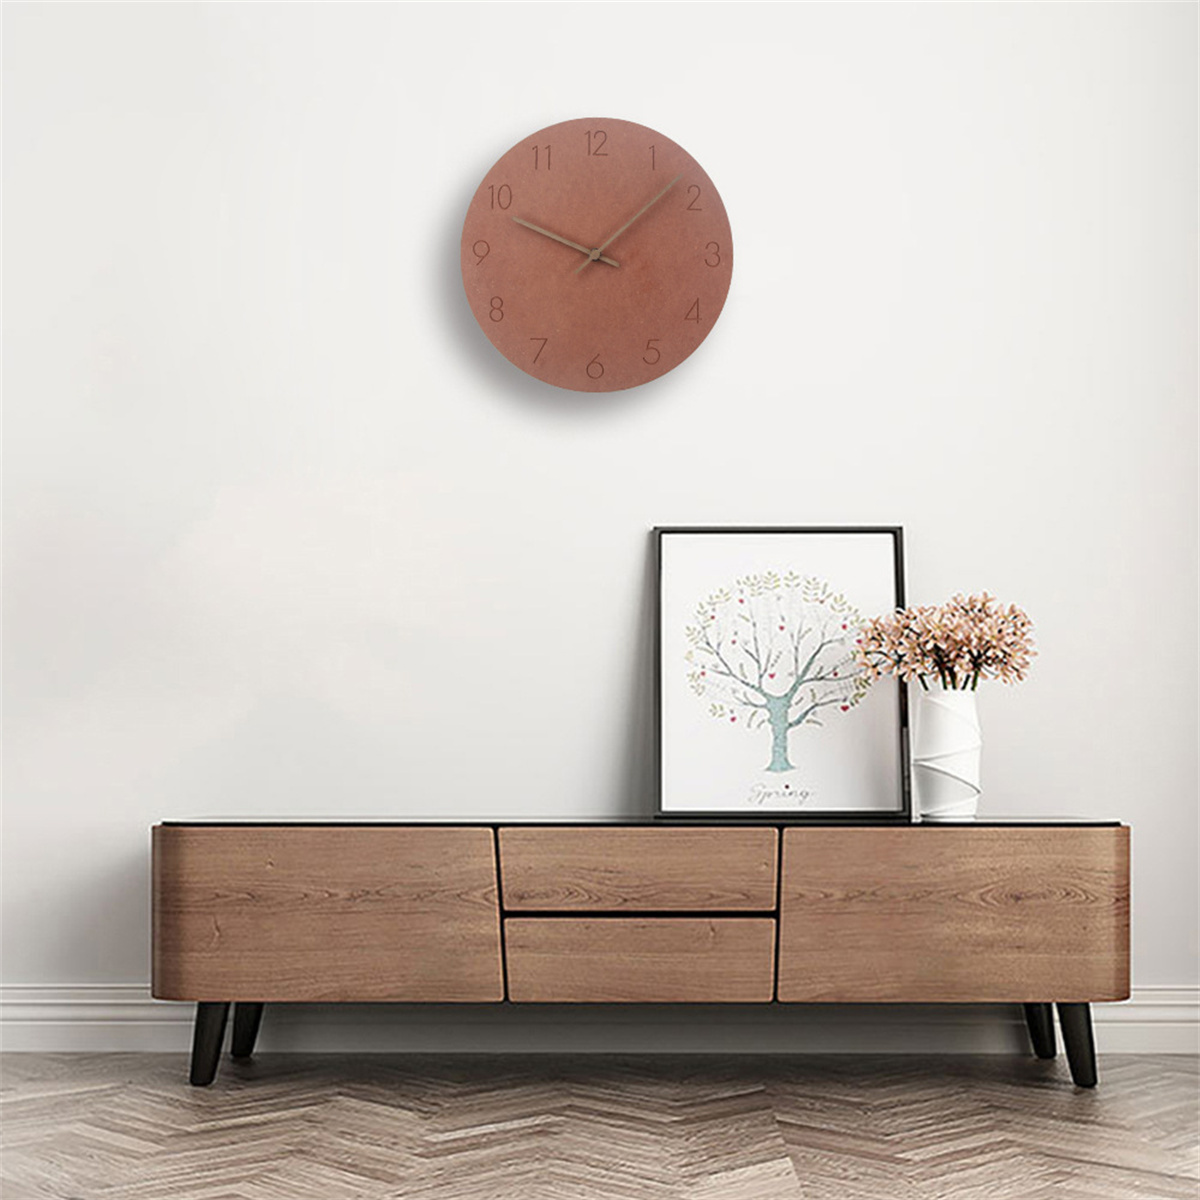 Uhren Wanduhr minimalistische Holz braun kreativ stumm hängen Wanduhr Wohnzimmer aus SYNTEK Uhr